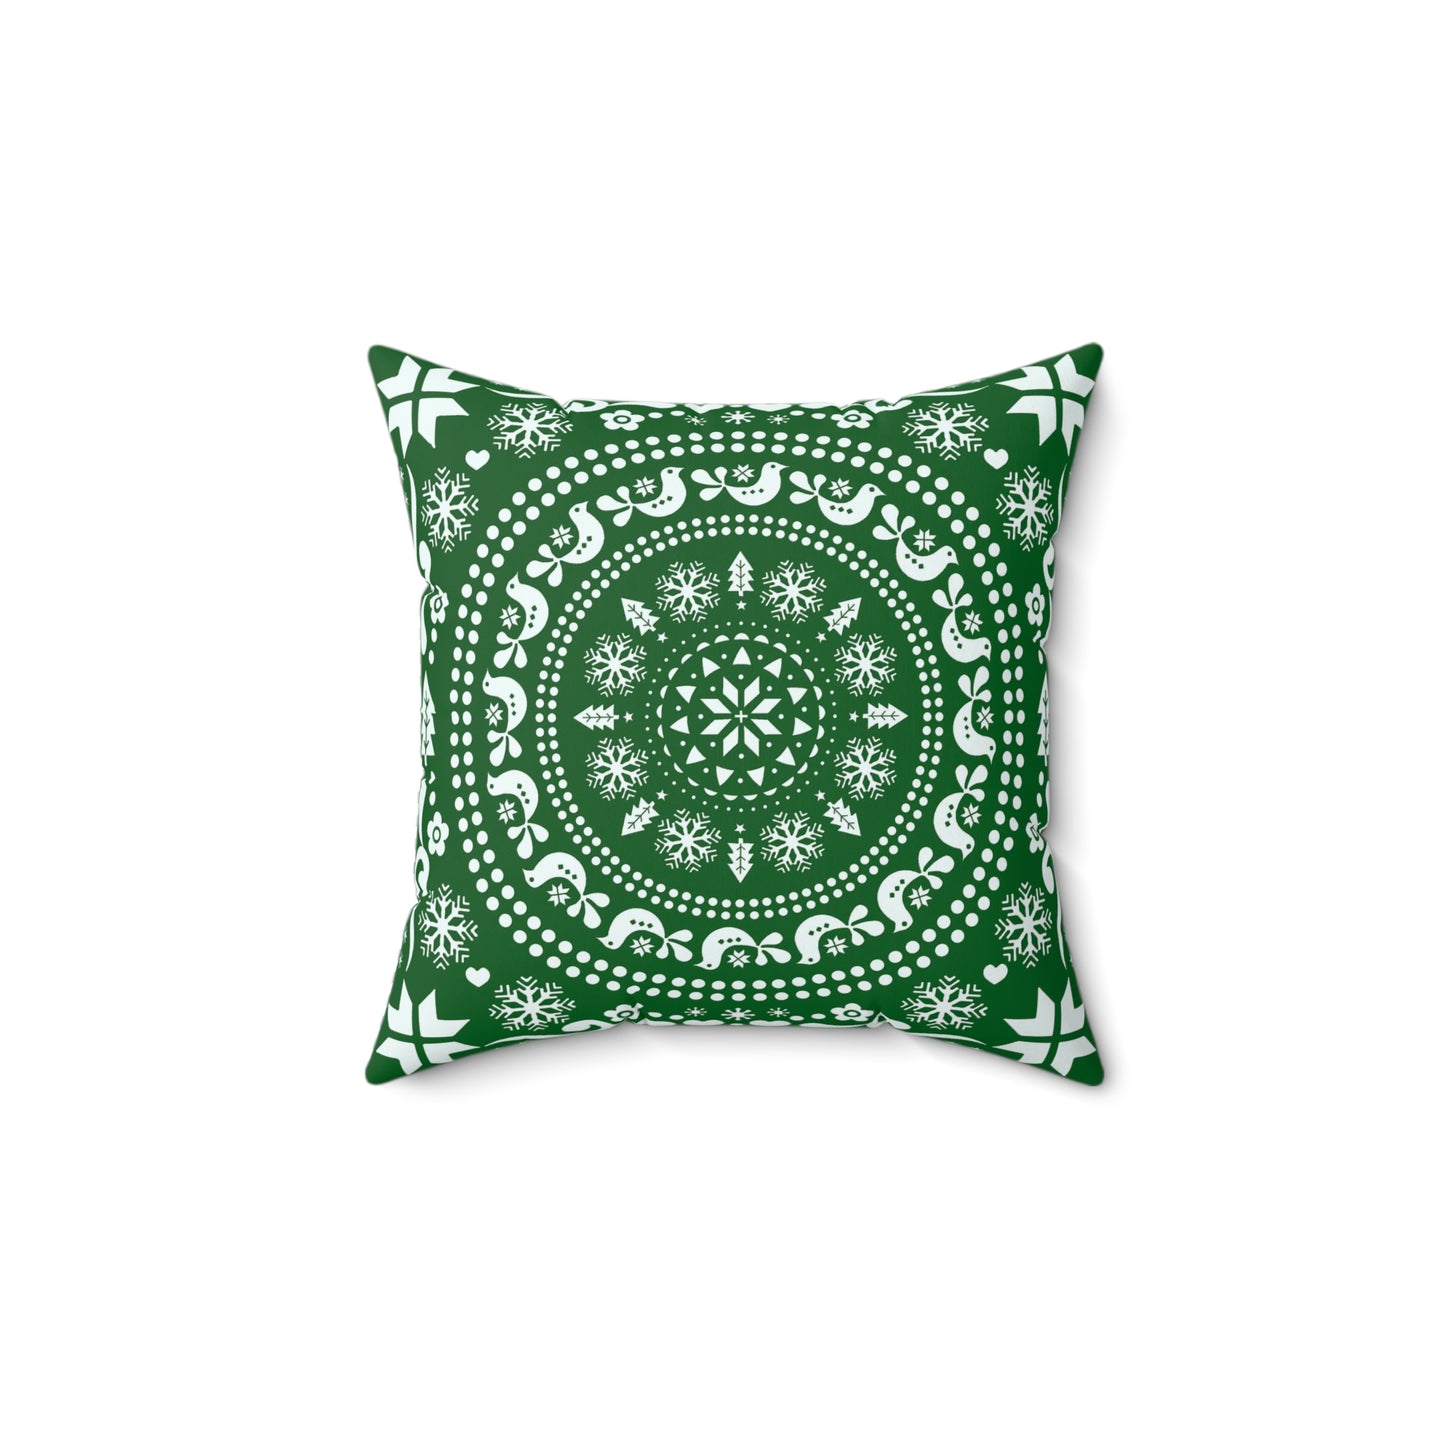 Charming Green Christmas Folk Art Pillow